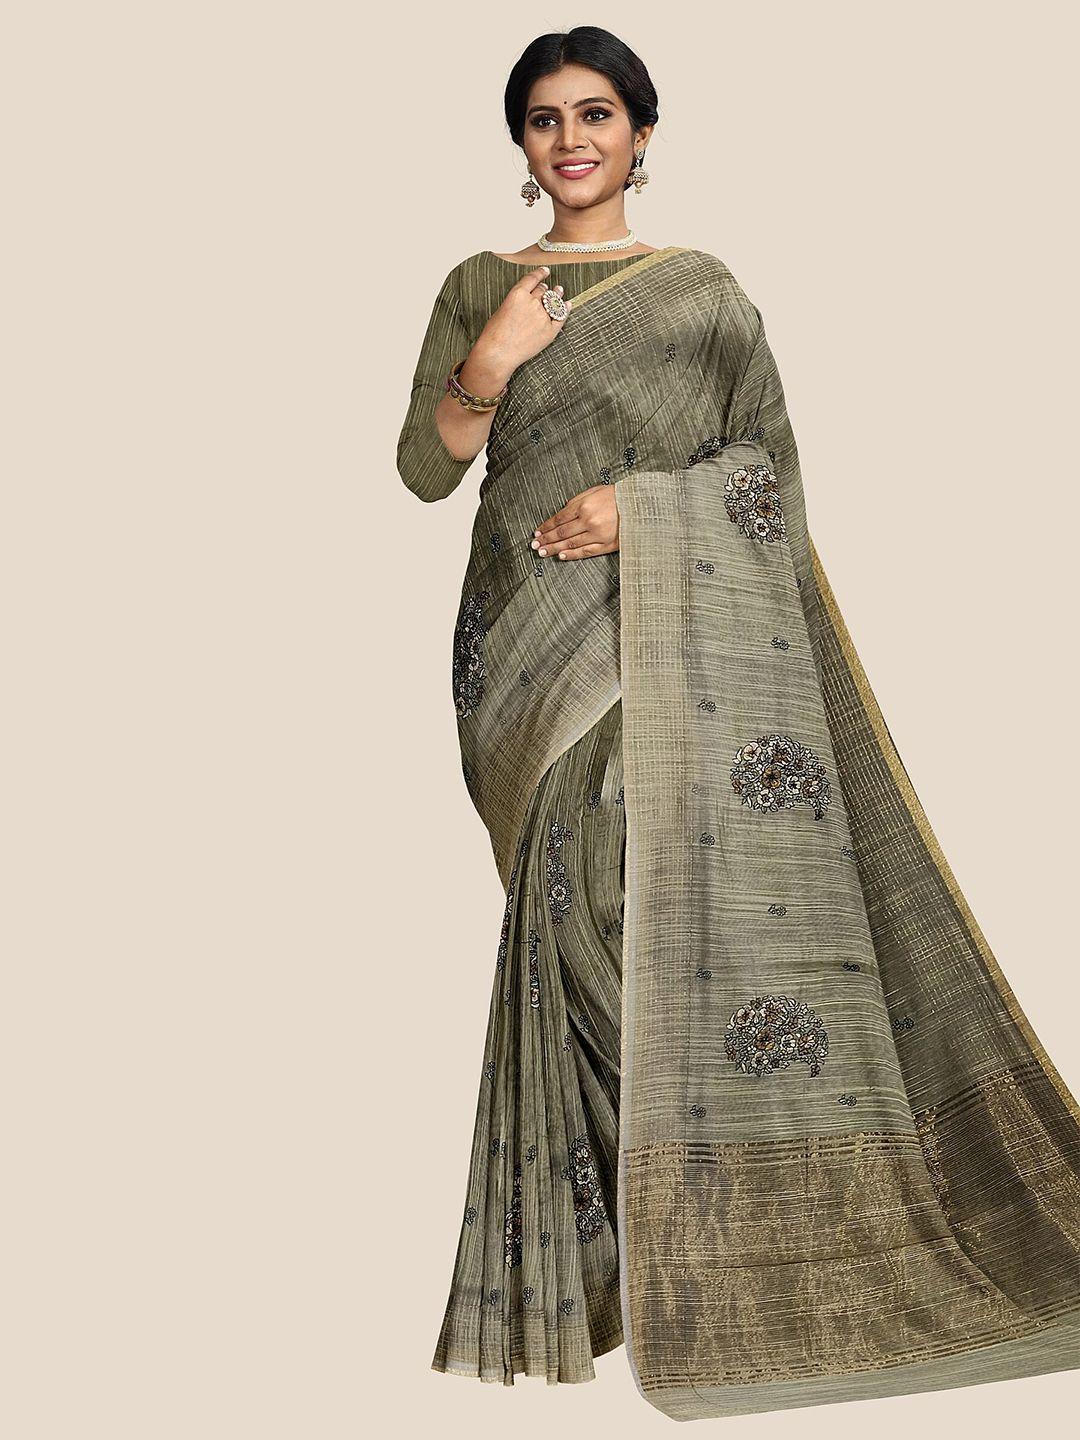 the-chennai-silks-floral-zari-banarasi-saree